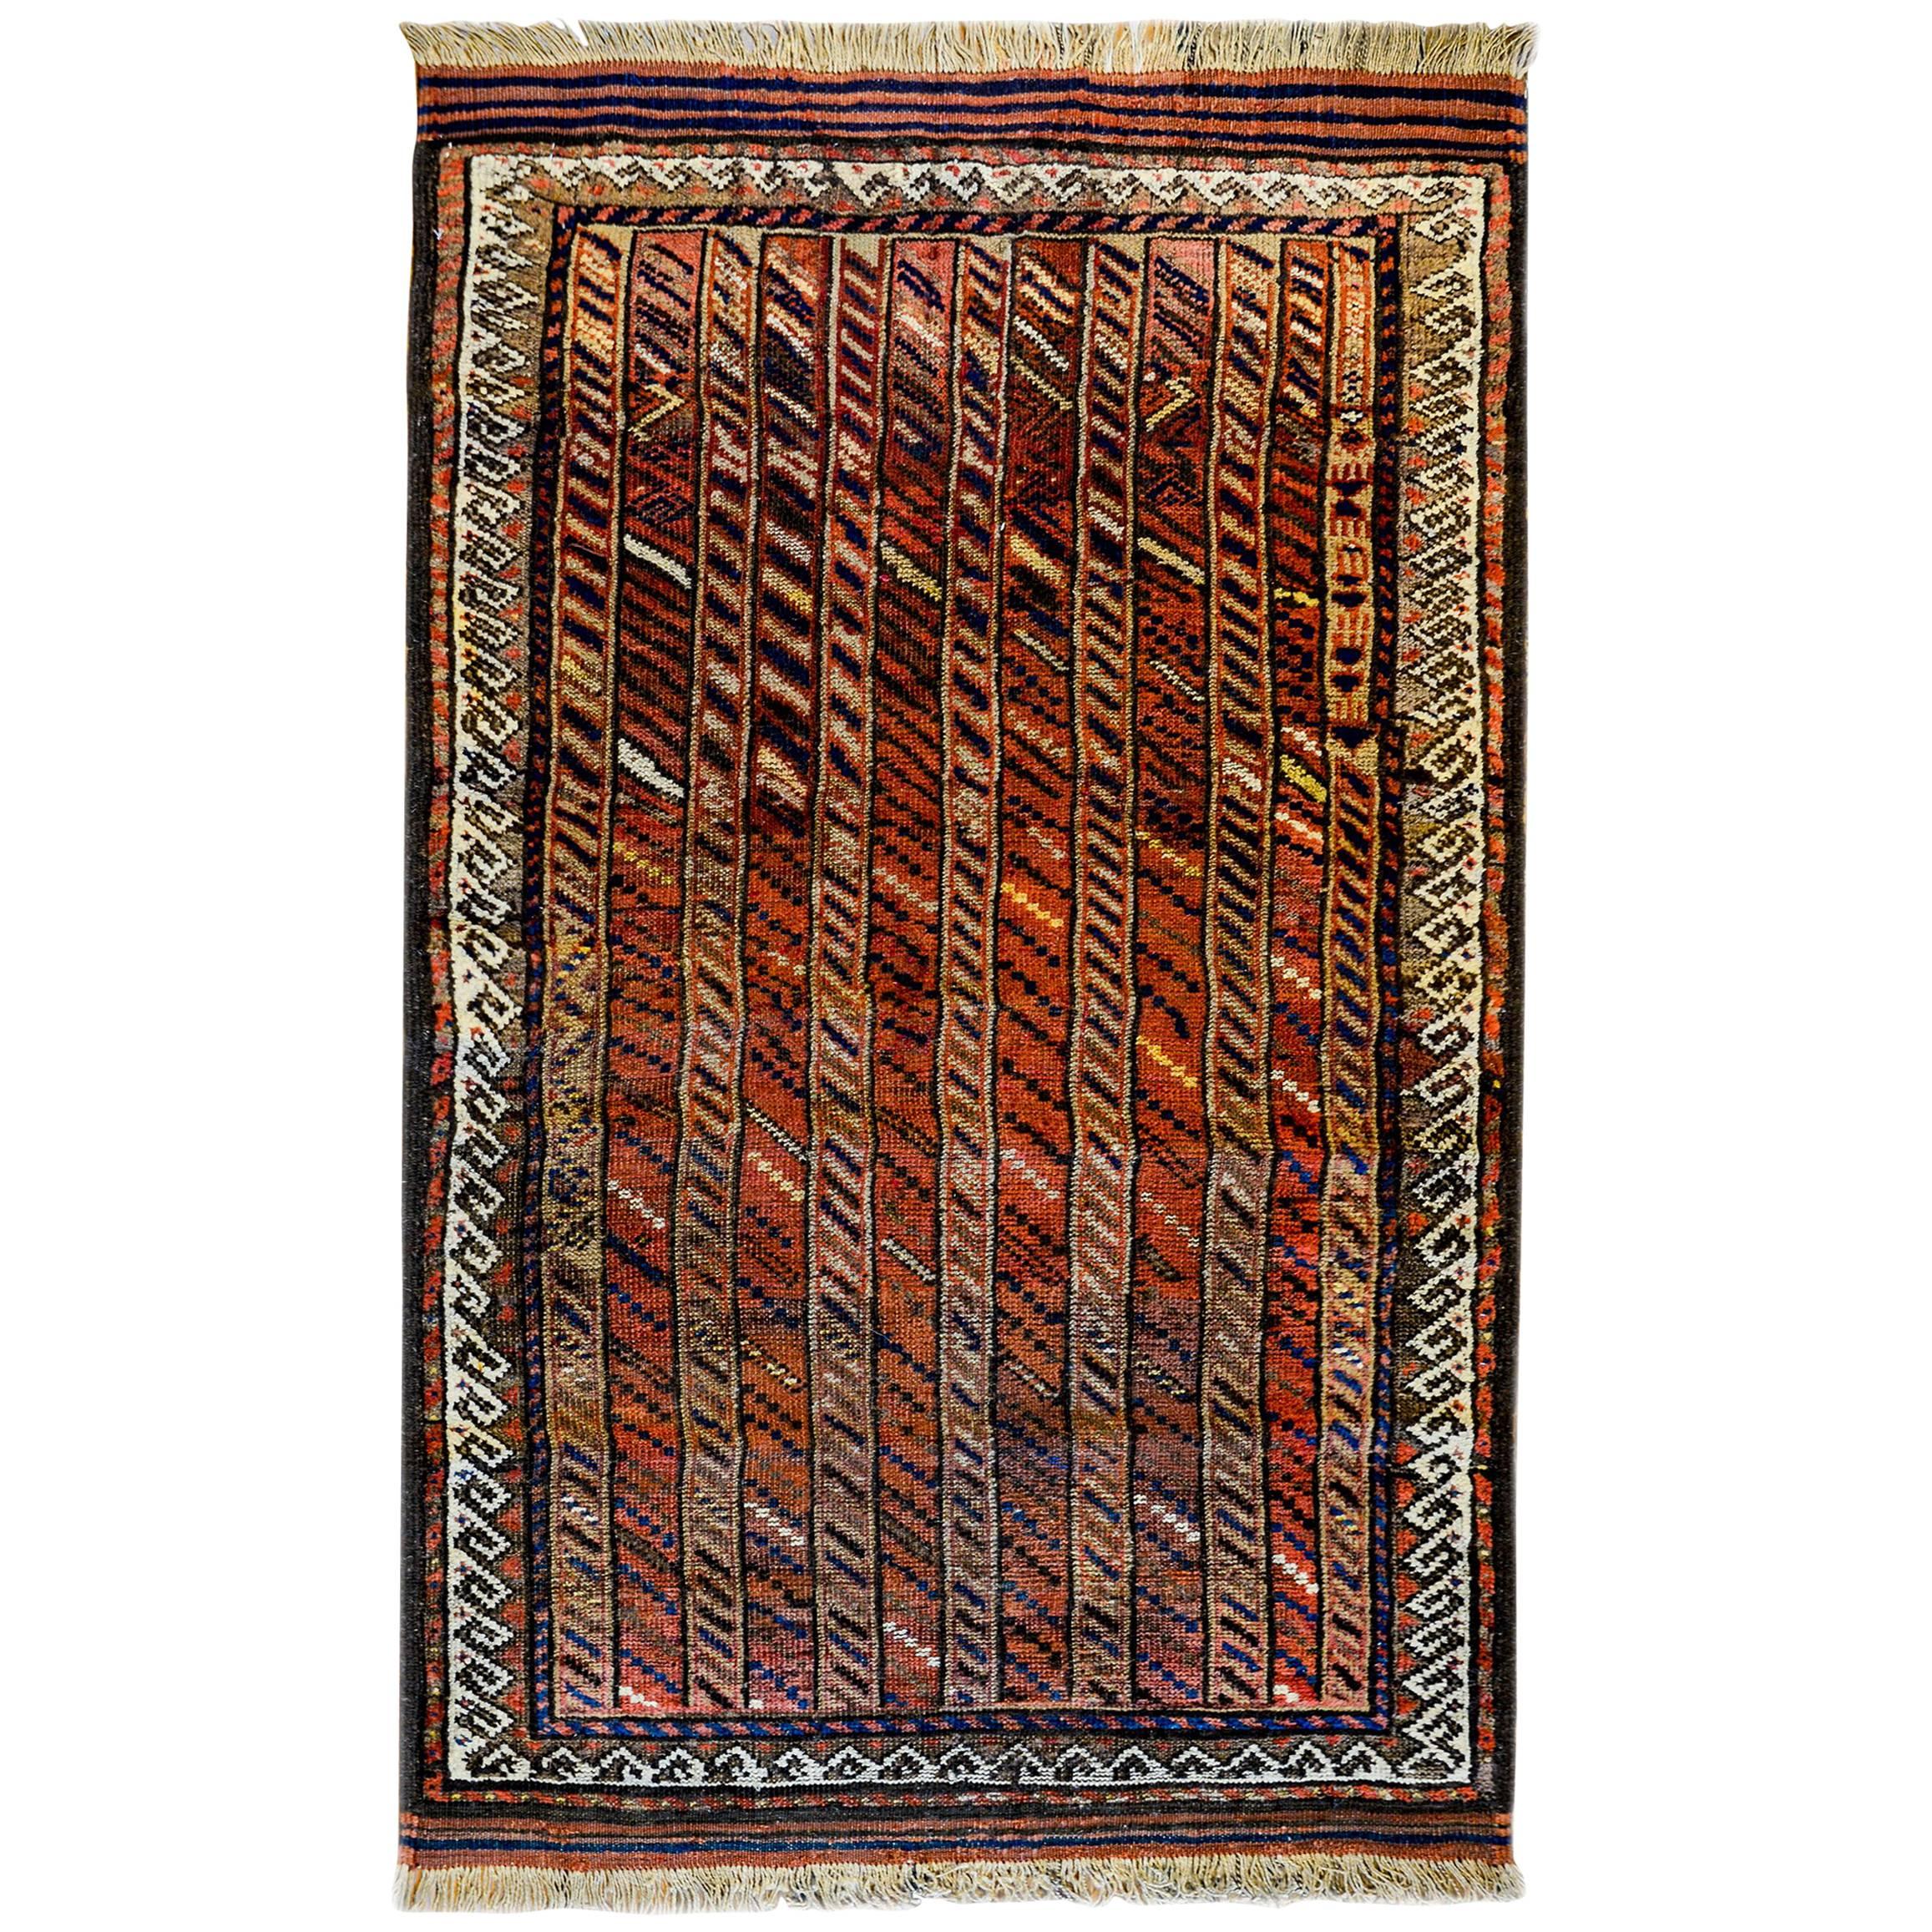 Atemberaubender Baluch-Teppich aus den 1900er Jahren